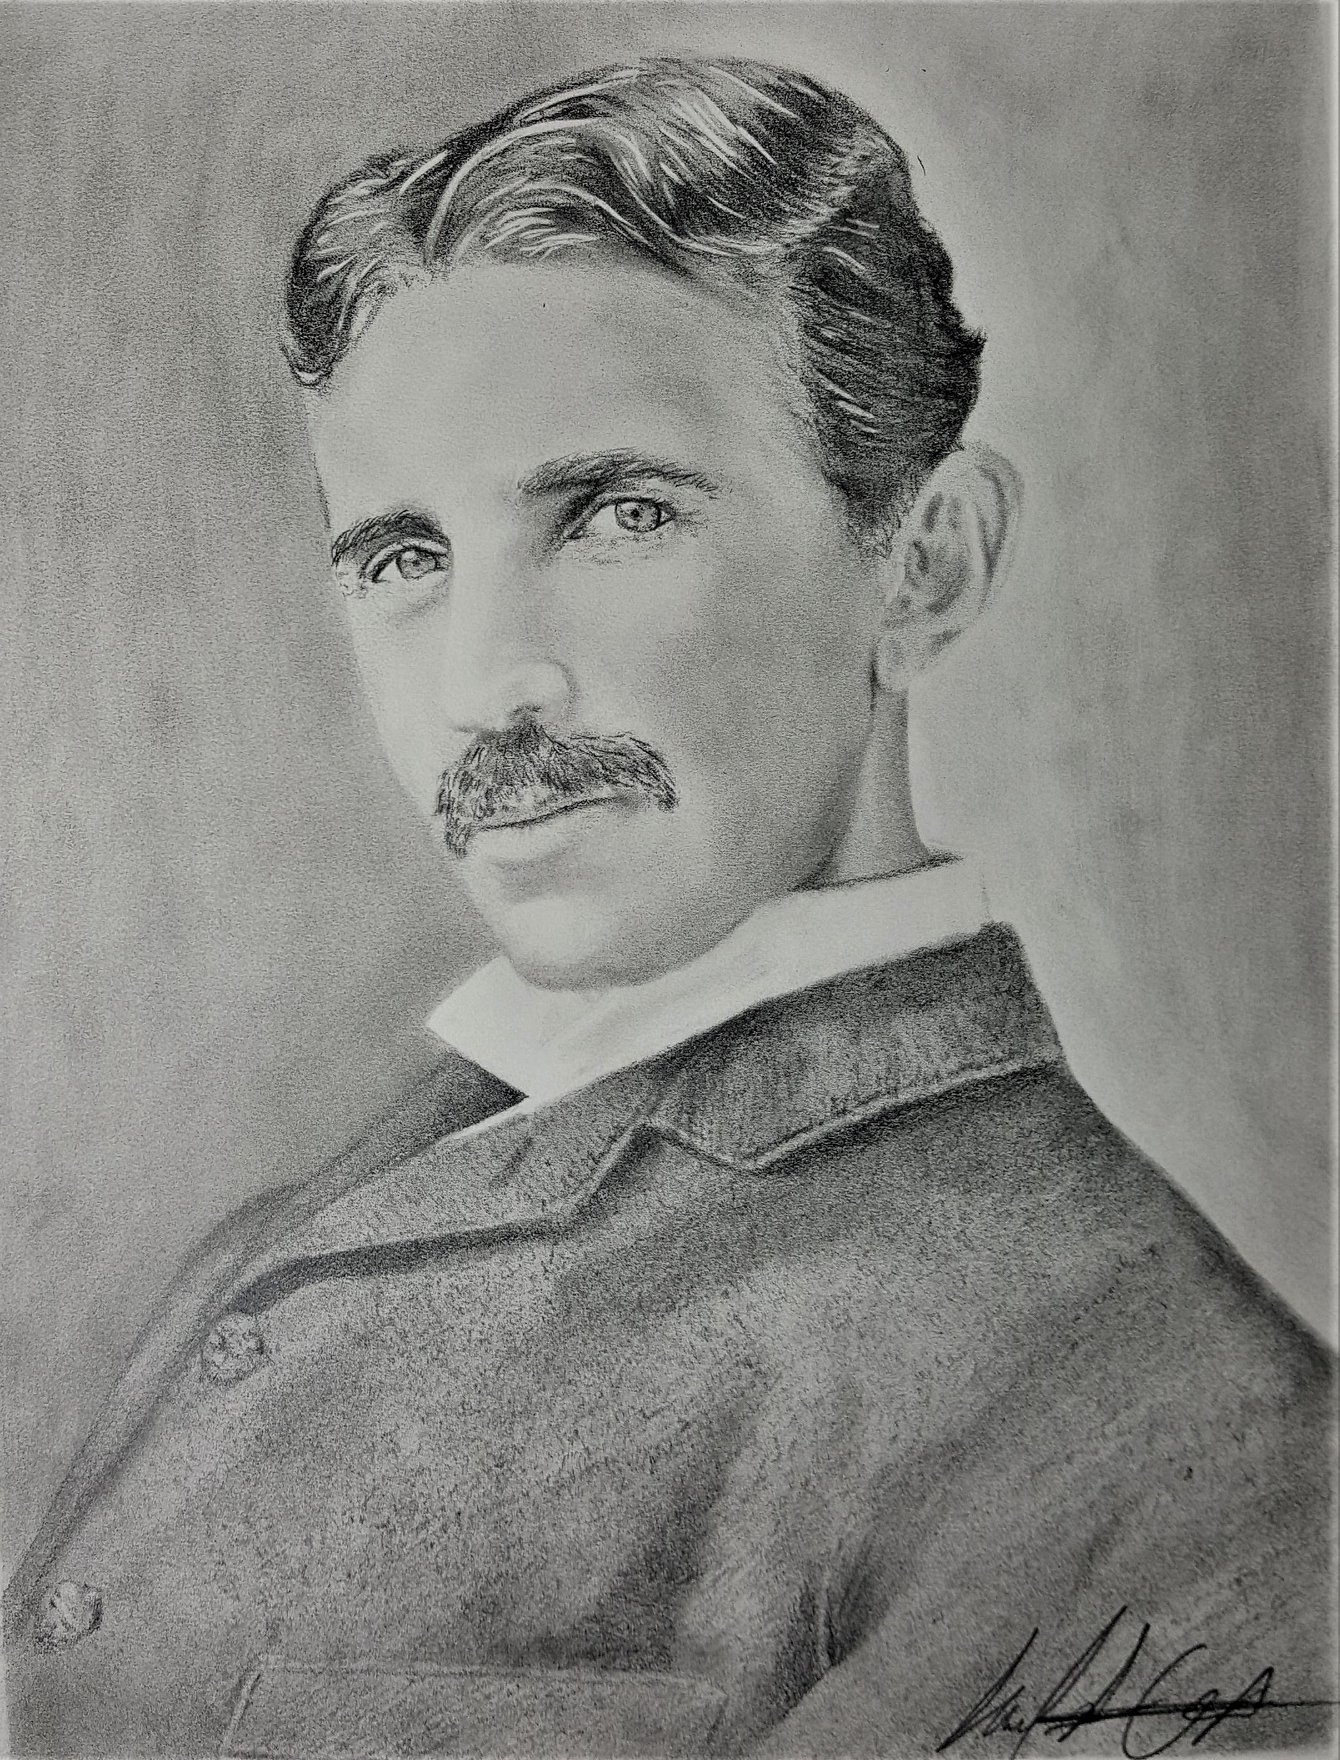 Nikola Tesla Sketch at Explore collection of